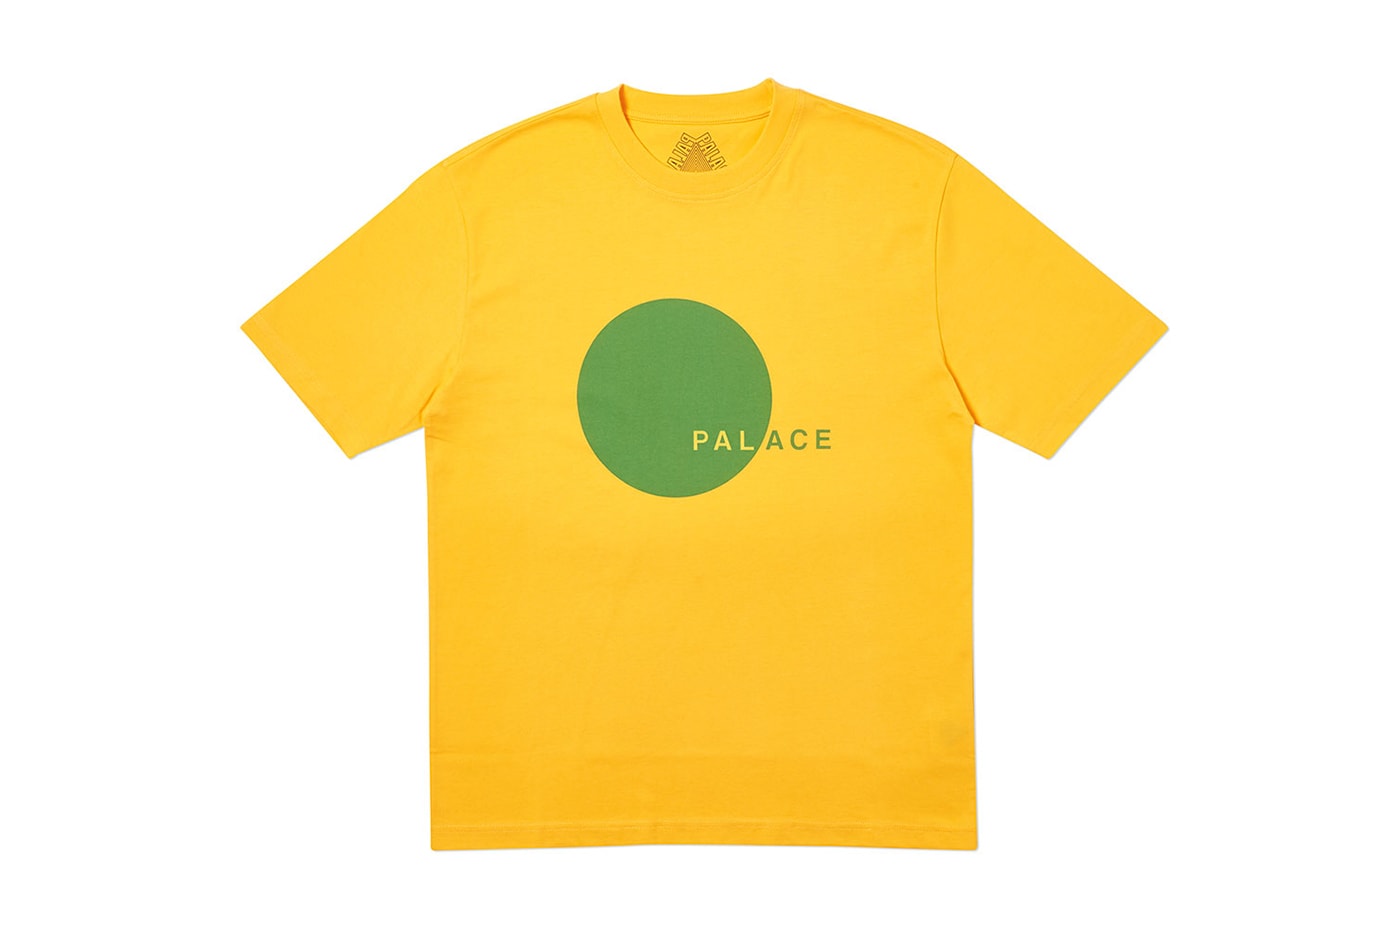 Palace 2019 Summer Tees